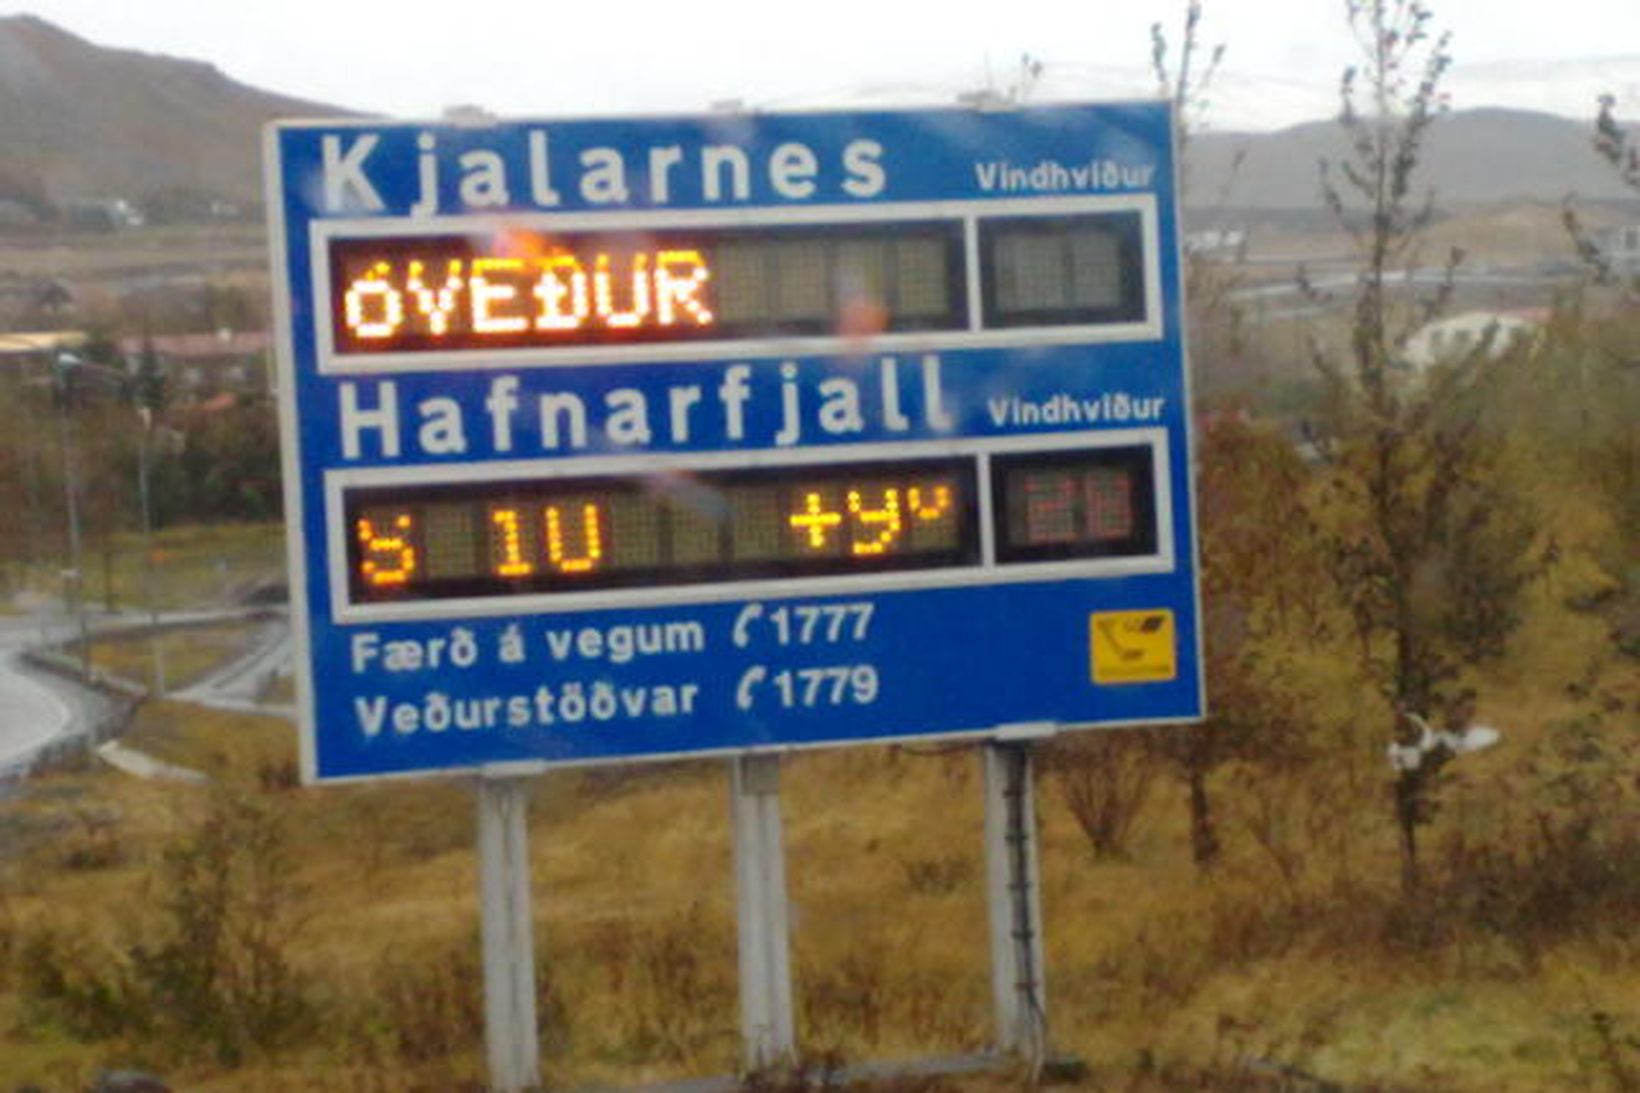 Sannkallað óveður er nú á Kjalarnesi.